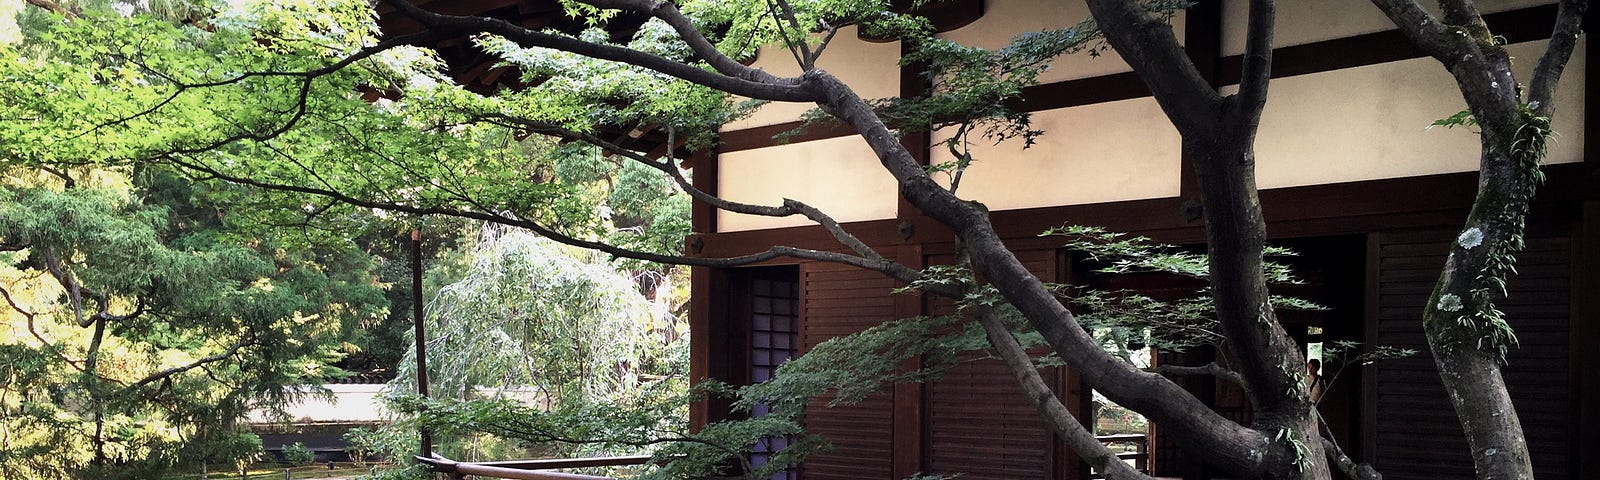 Shonen-ji Garden, Kyoto